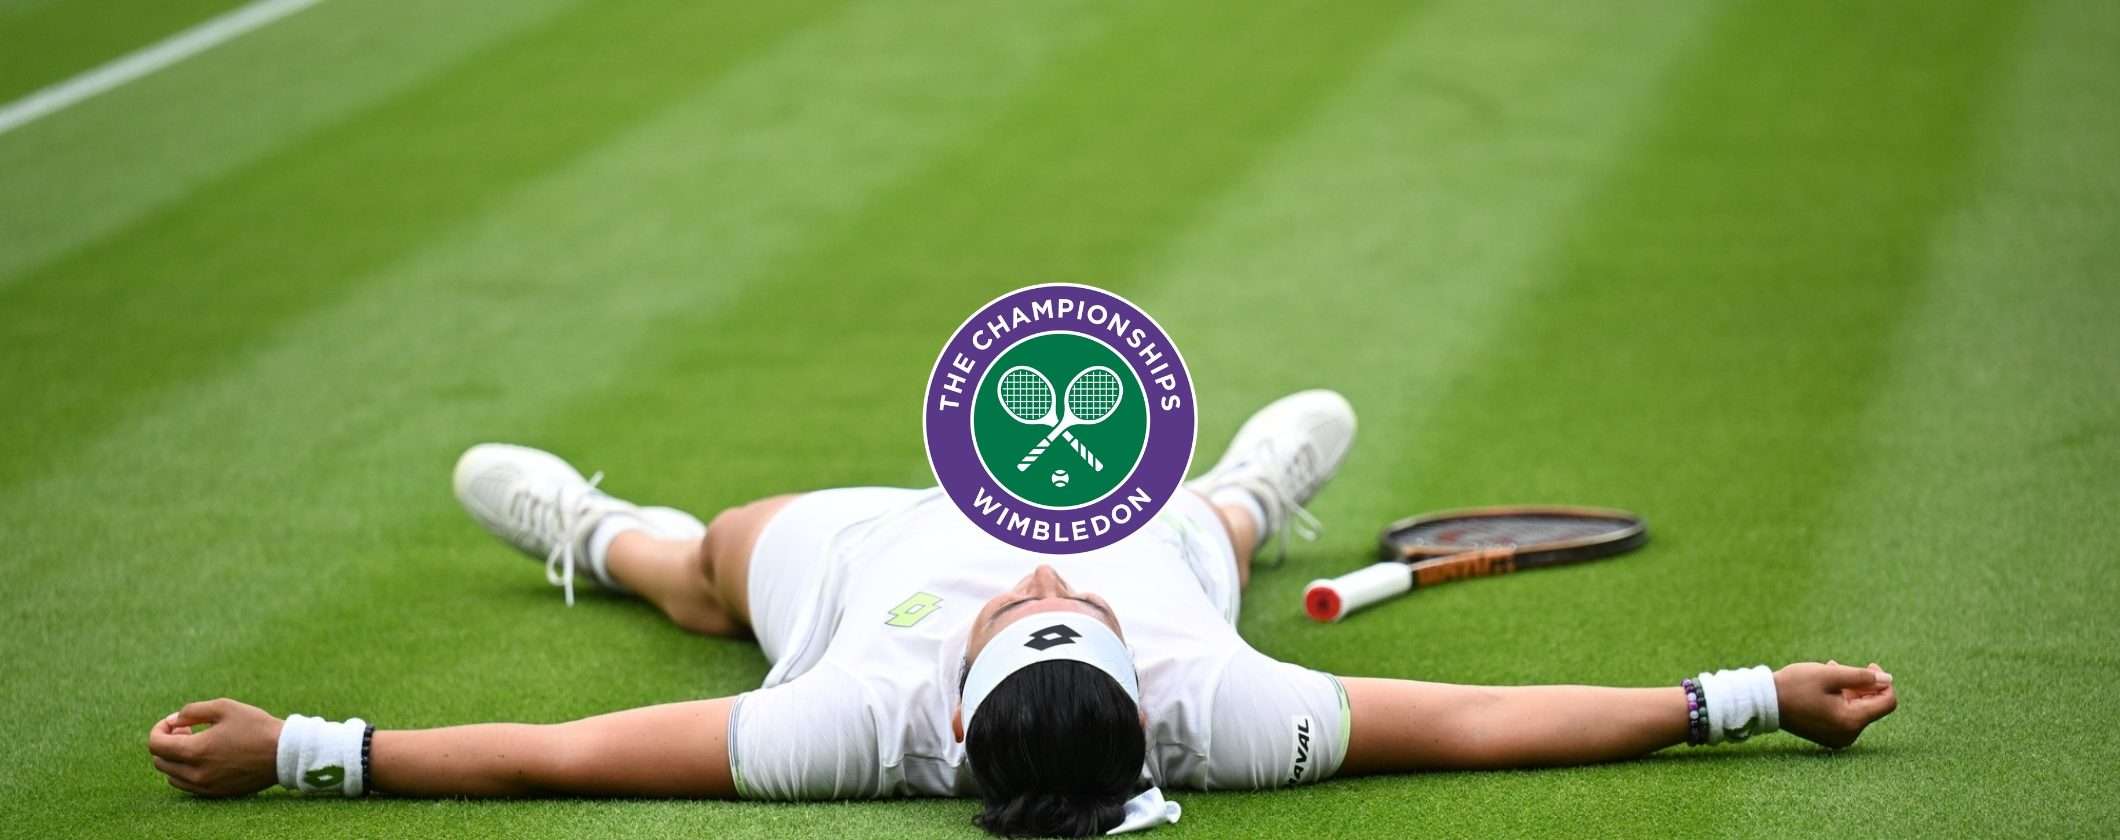 Sinner-Djokovic come vedere la diretta streaming della semifinale Wimbledon